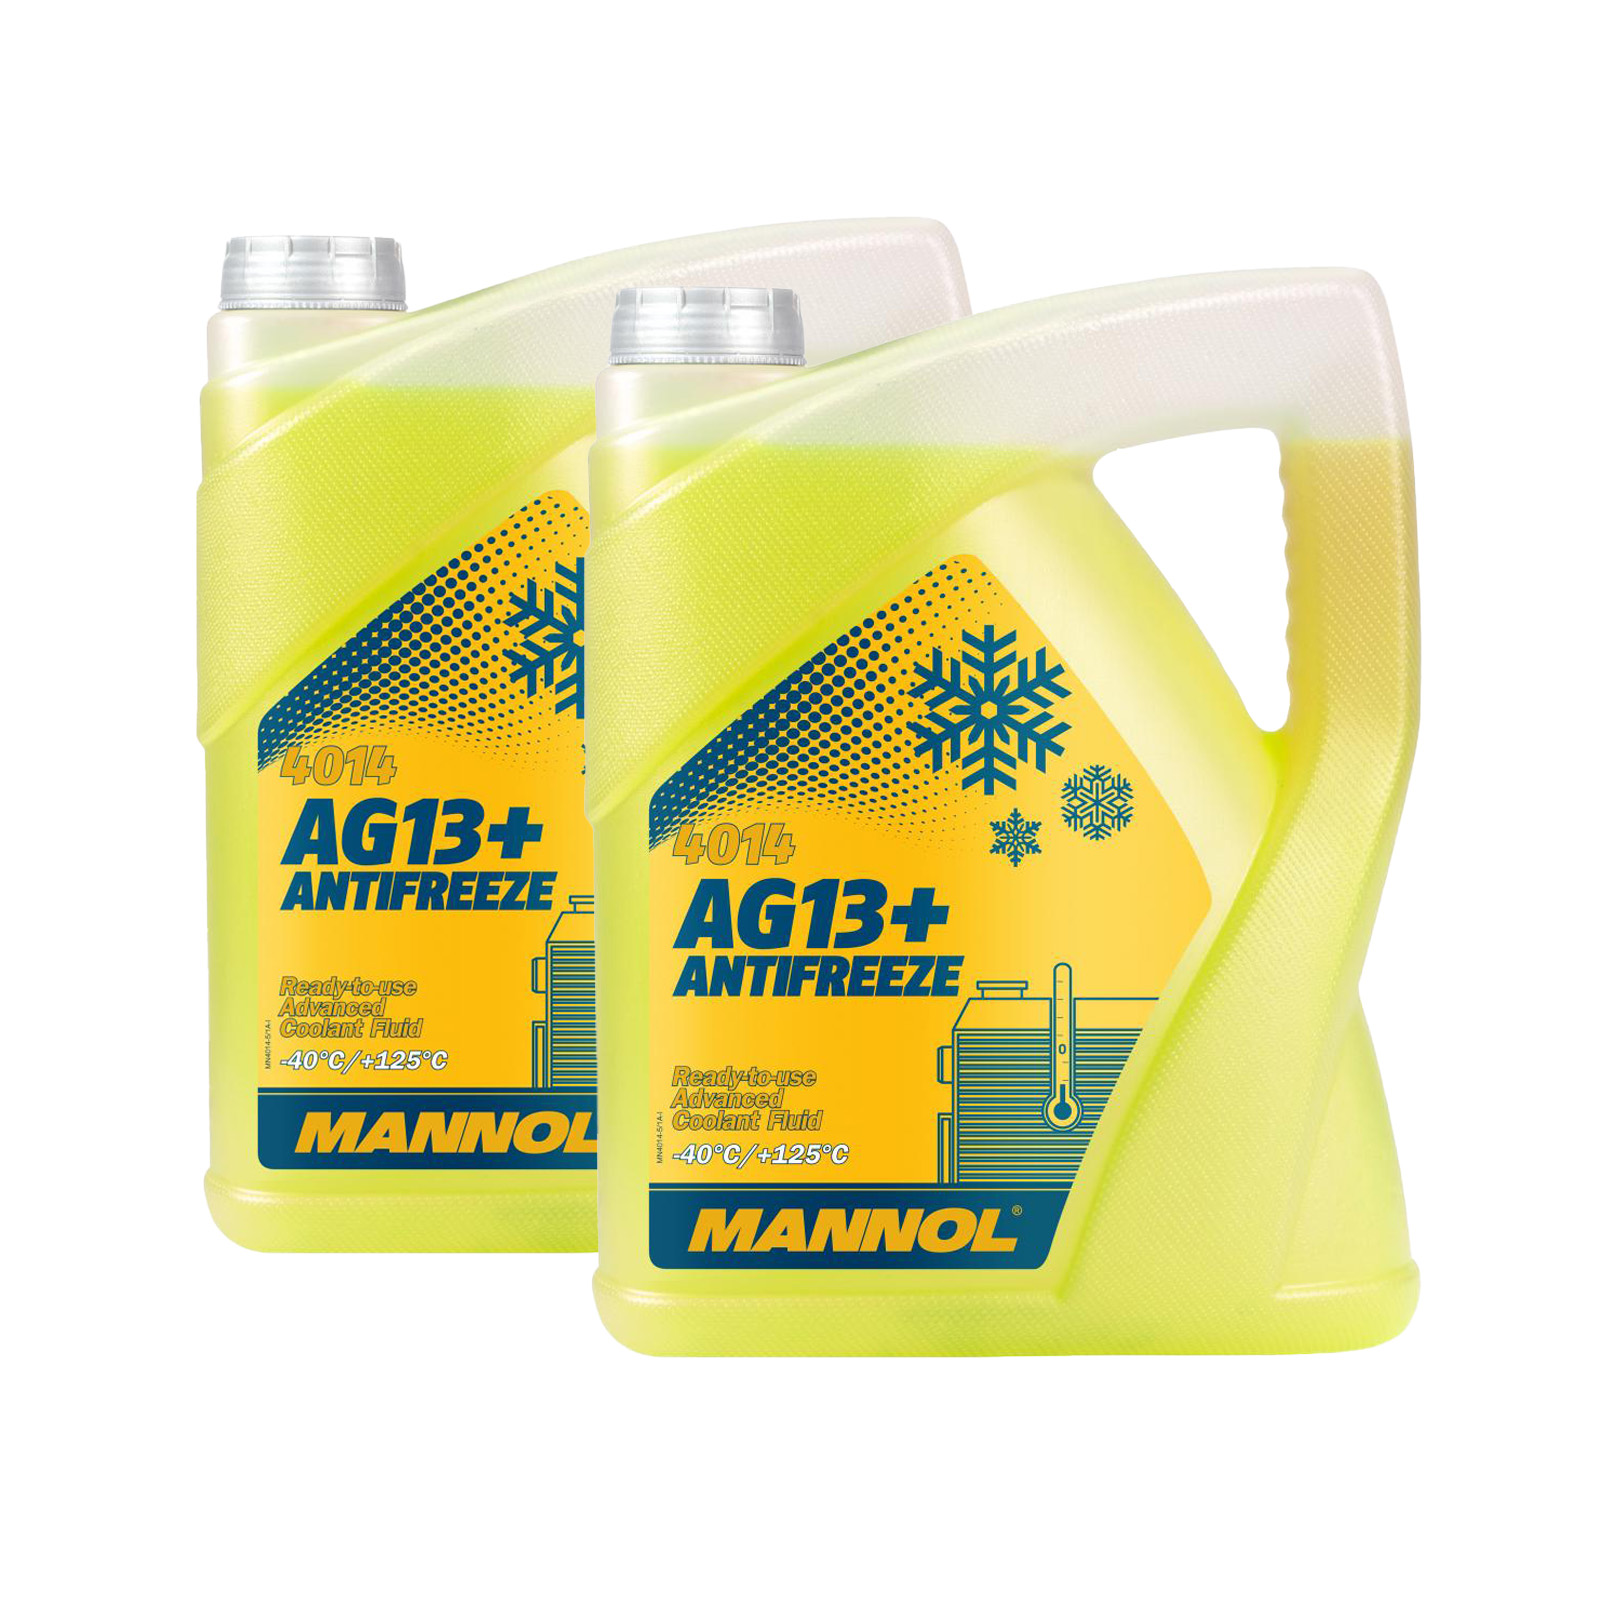 10 Liter (2x5) MANNOL AG13+ Kühlflüssigkeit Antifreeze Fertiggemisch -40°C gelb G13+